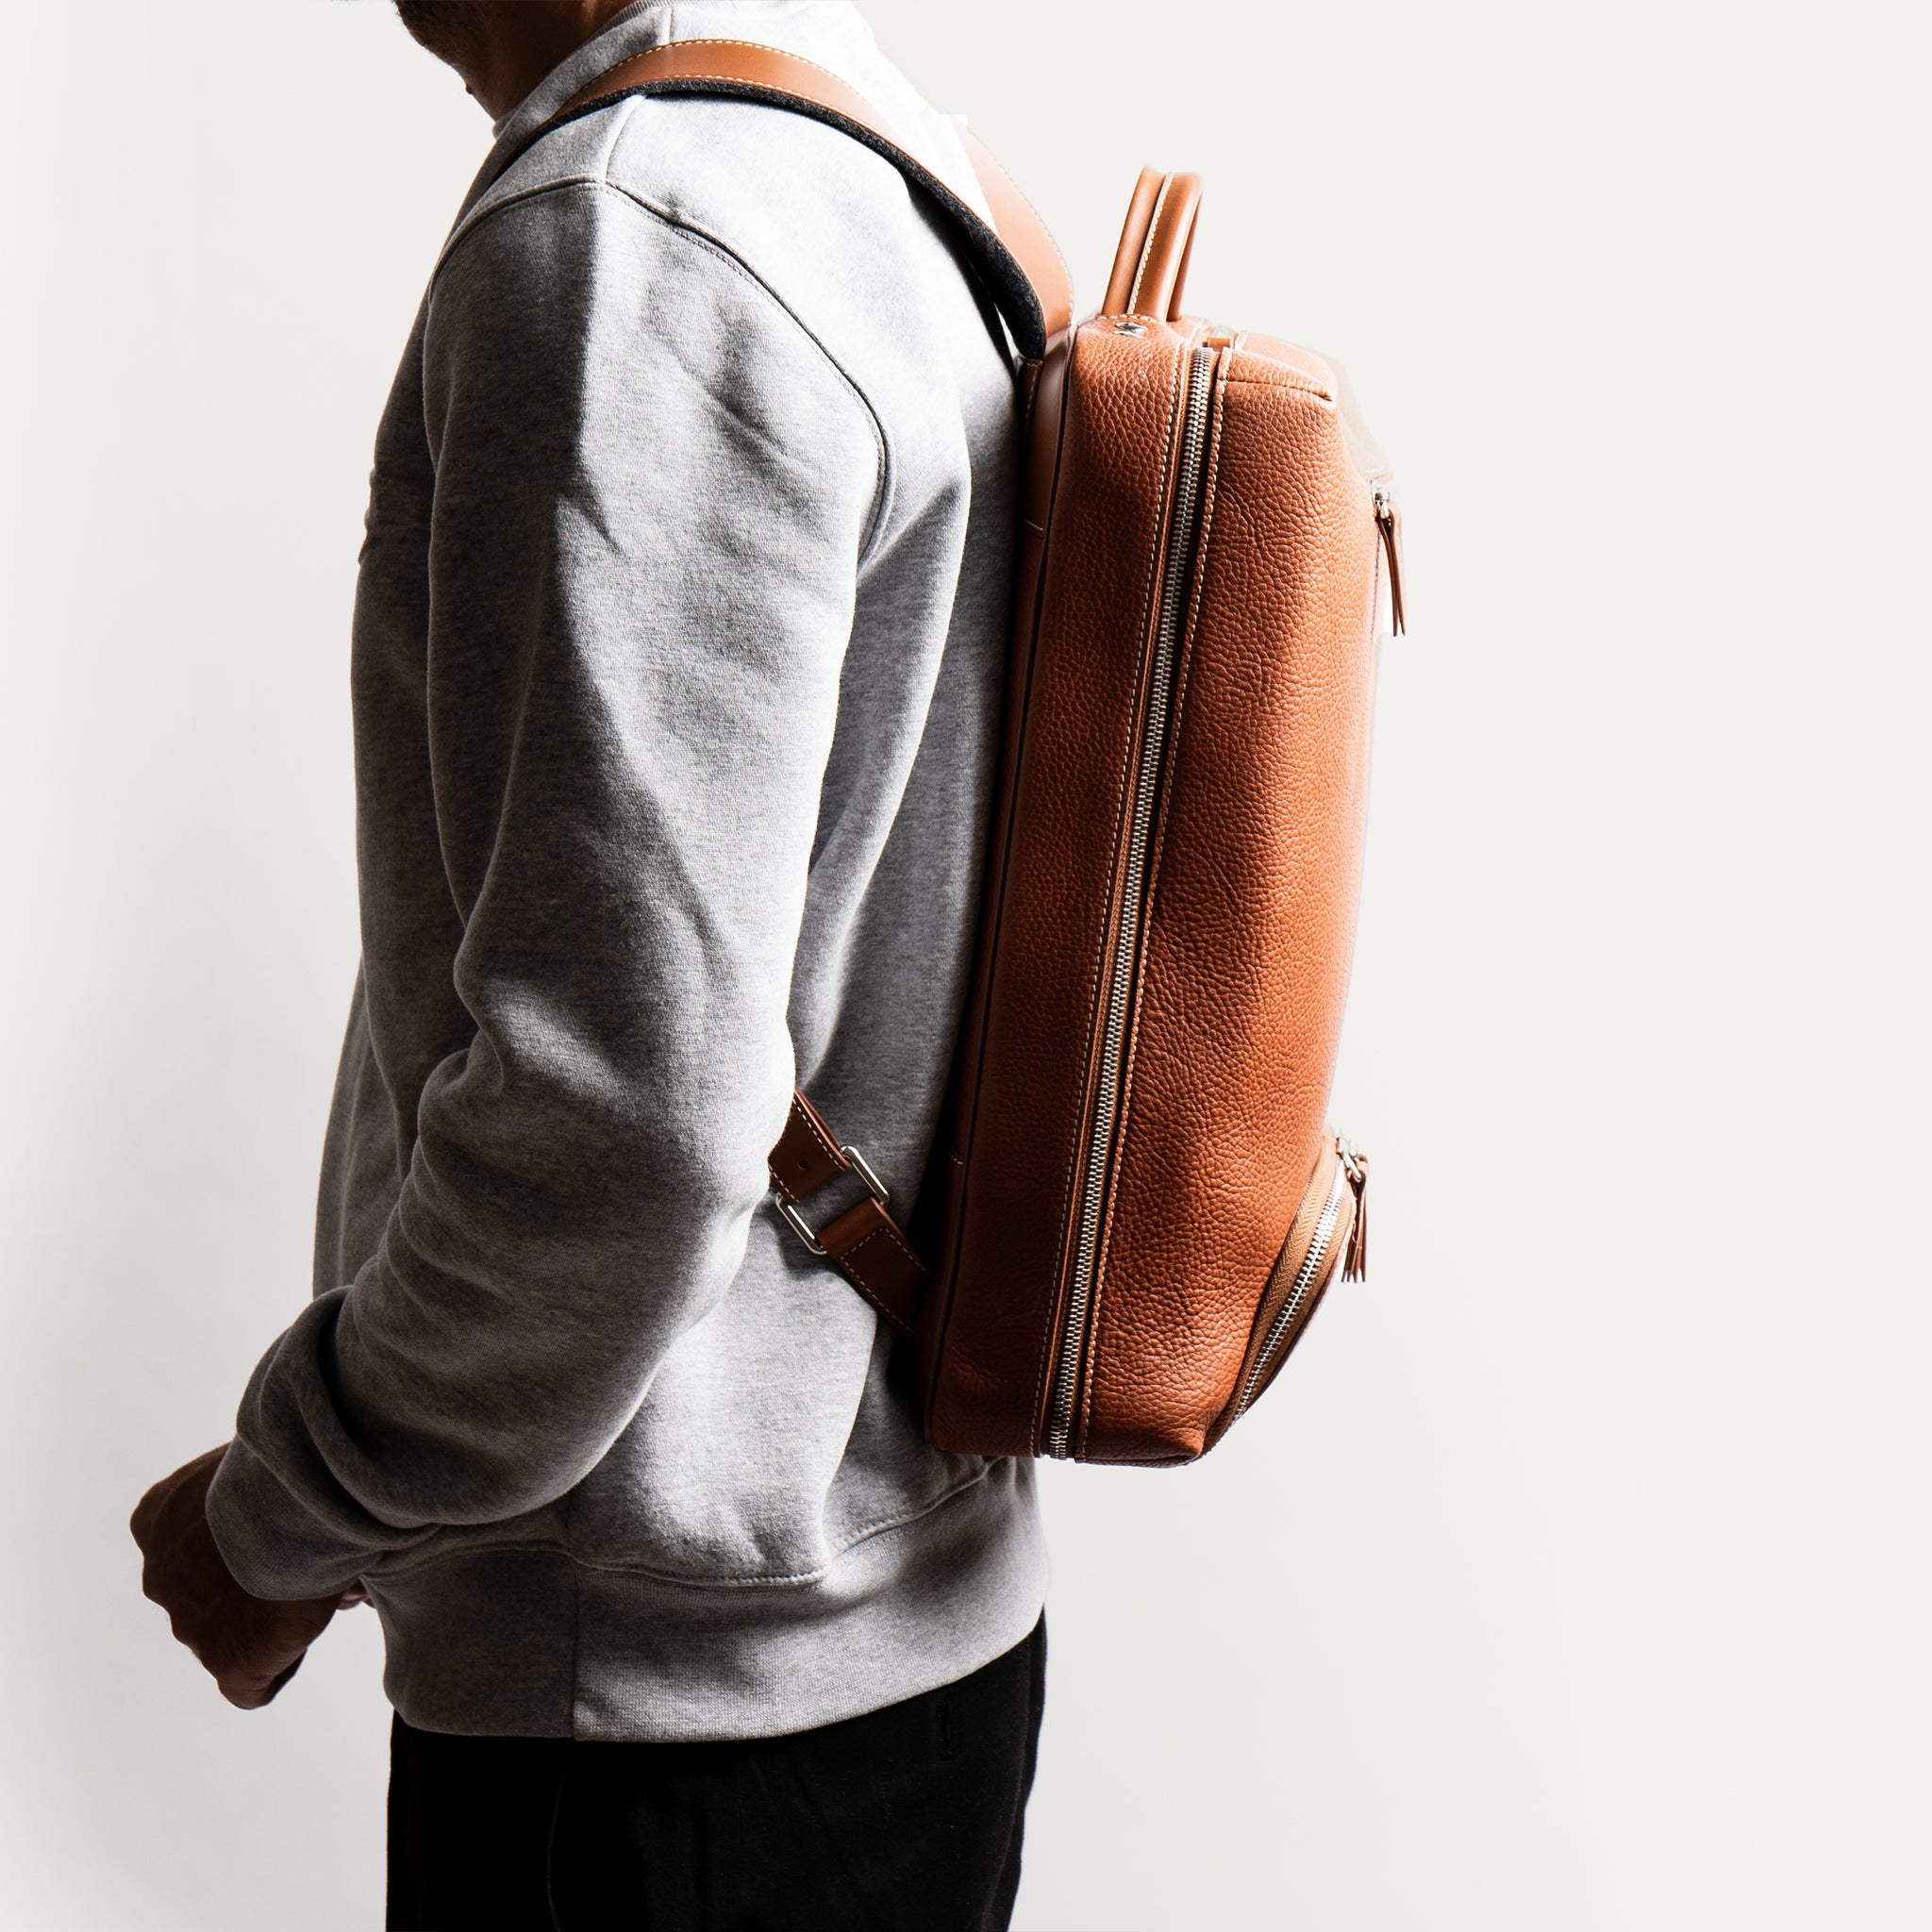 Le format très compact de notre sac à dos Giani offre un maximum de confort et sera le compagnon idéal de vos journées de travail.